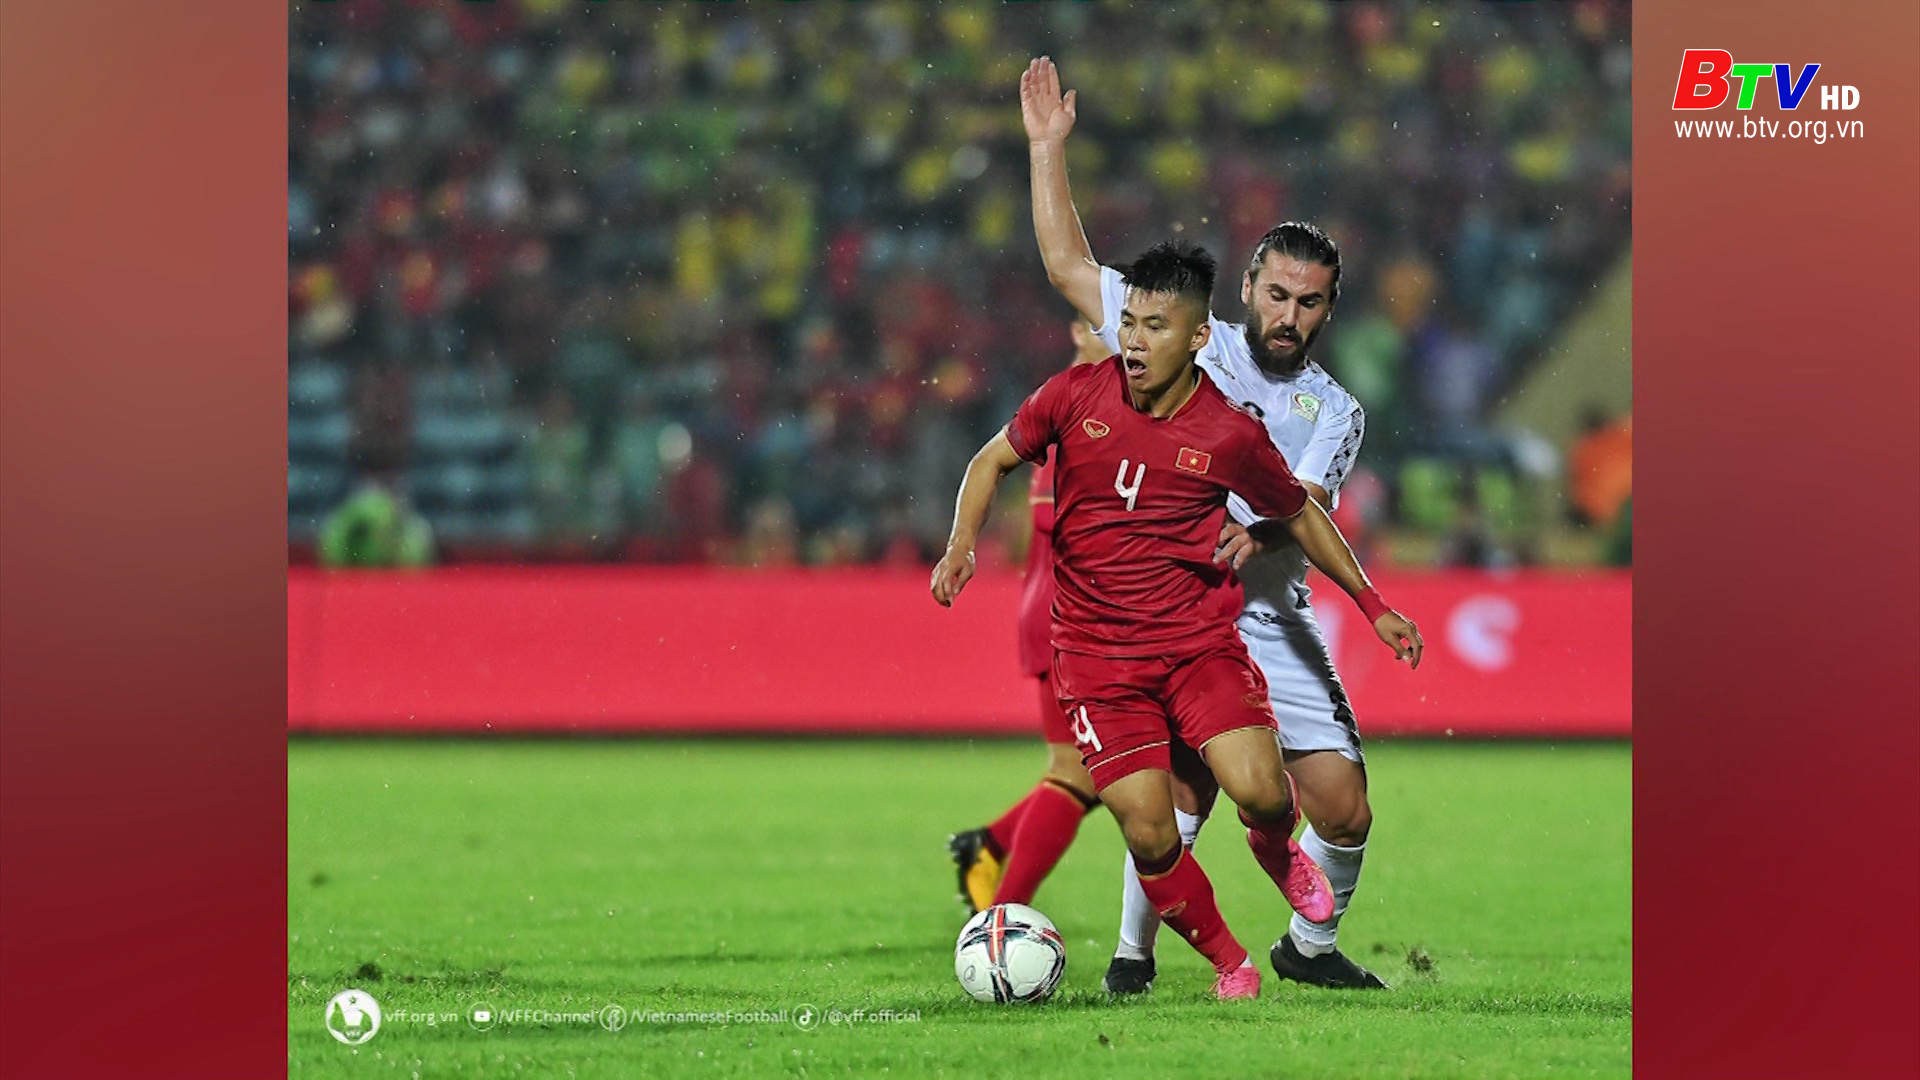 Đội tuyển Việt Nam thắng đội tuyển Palestine 2-0 trong trận giao hữu